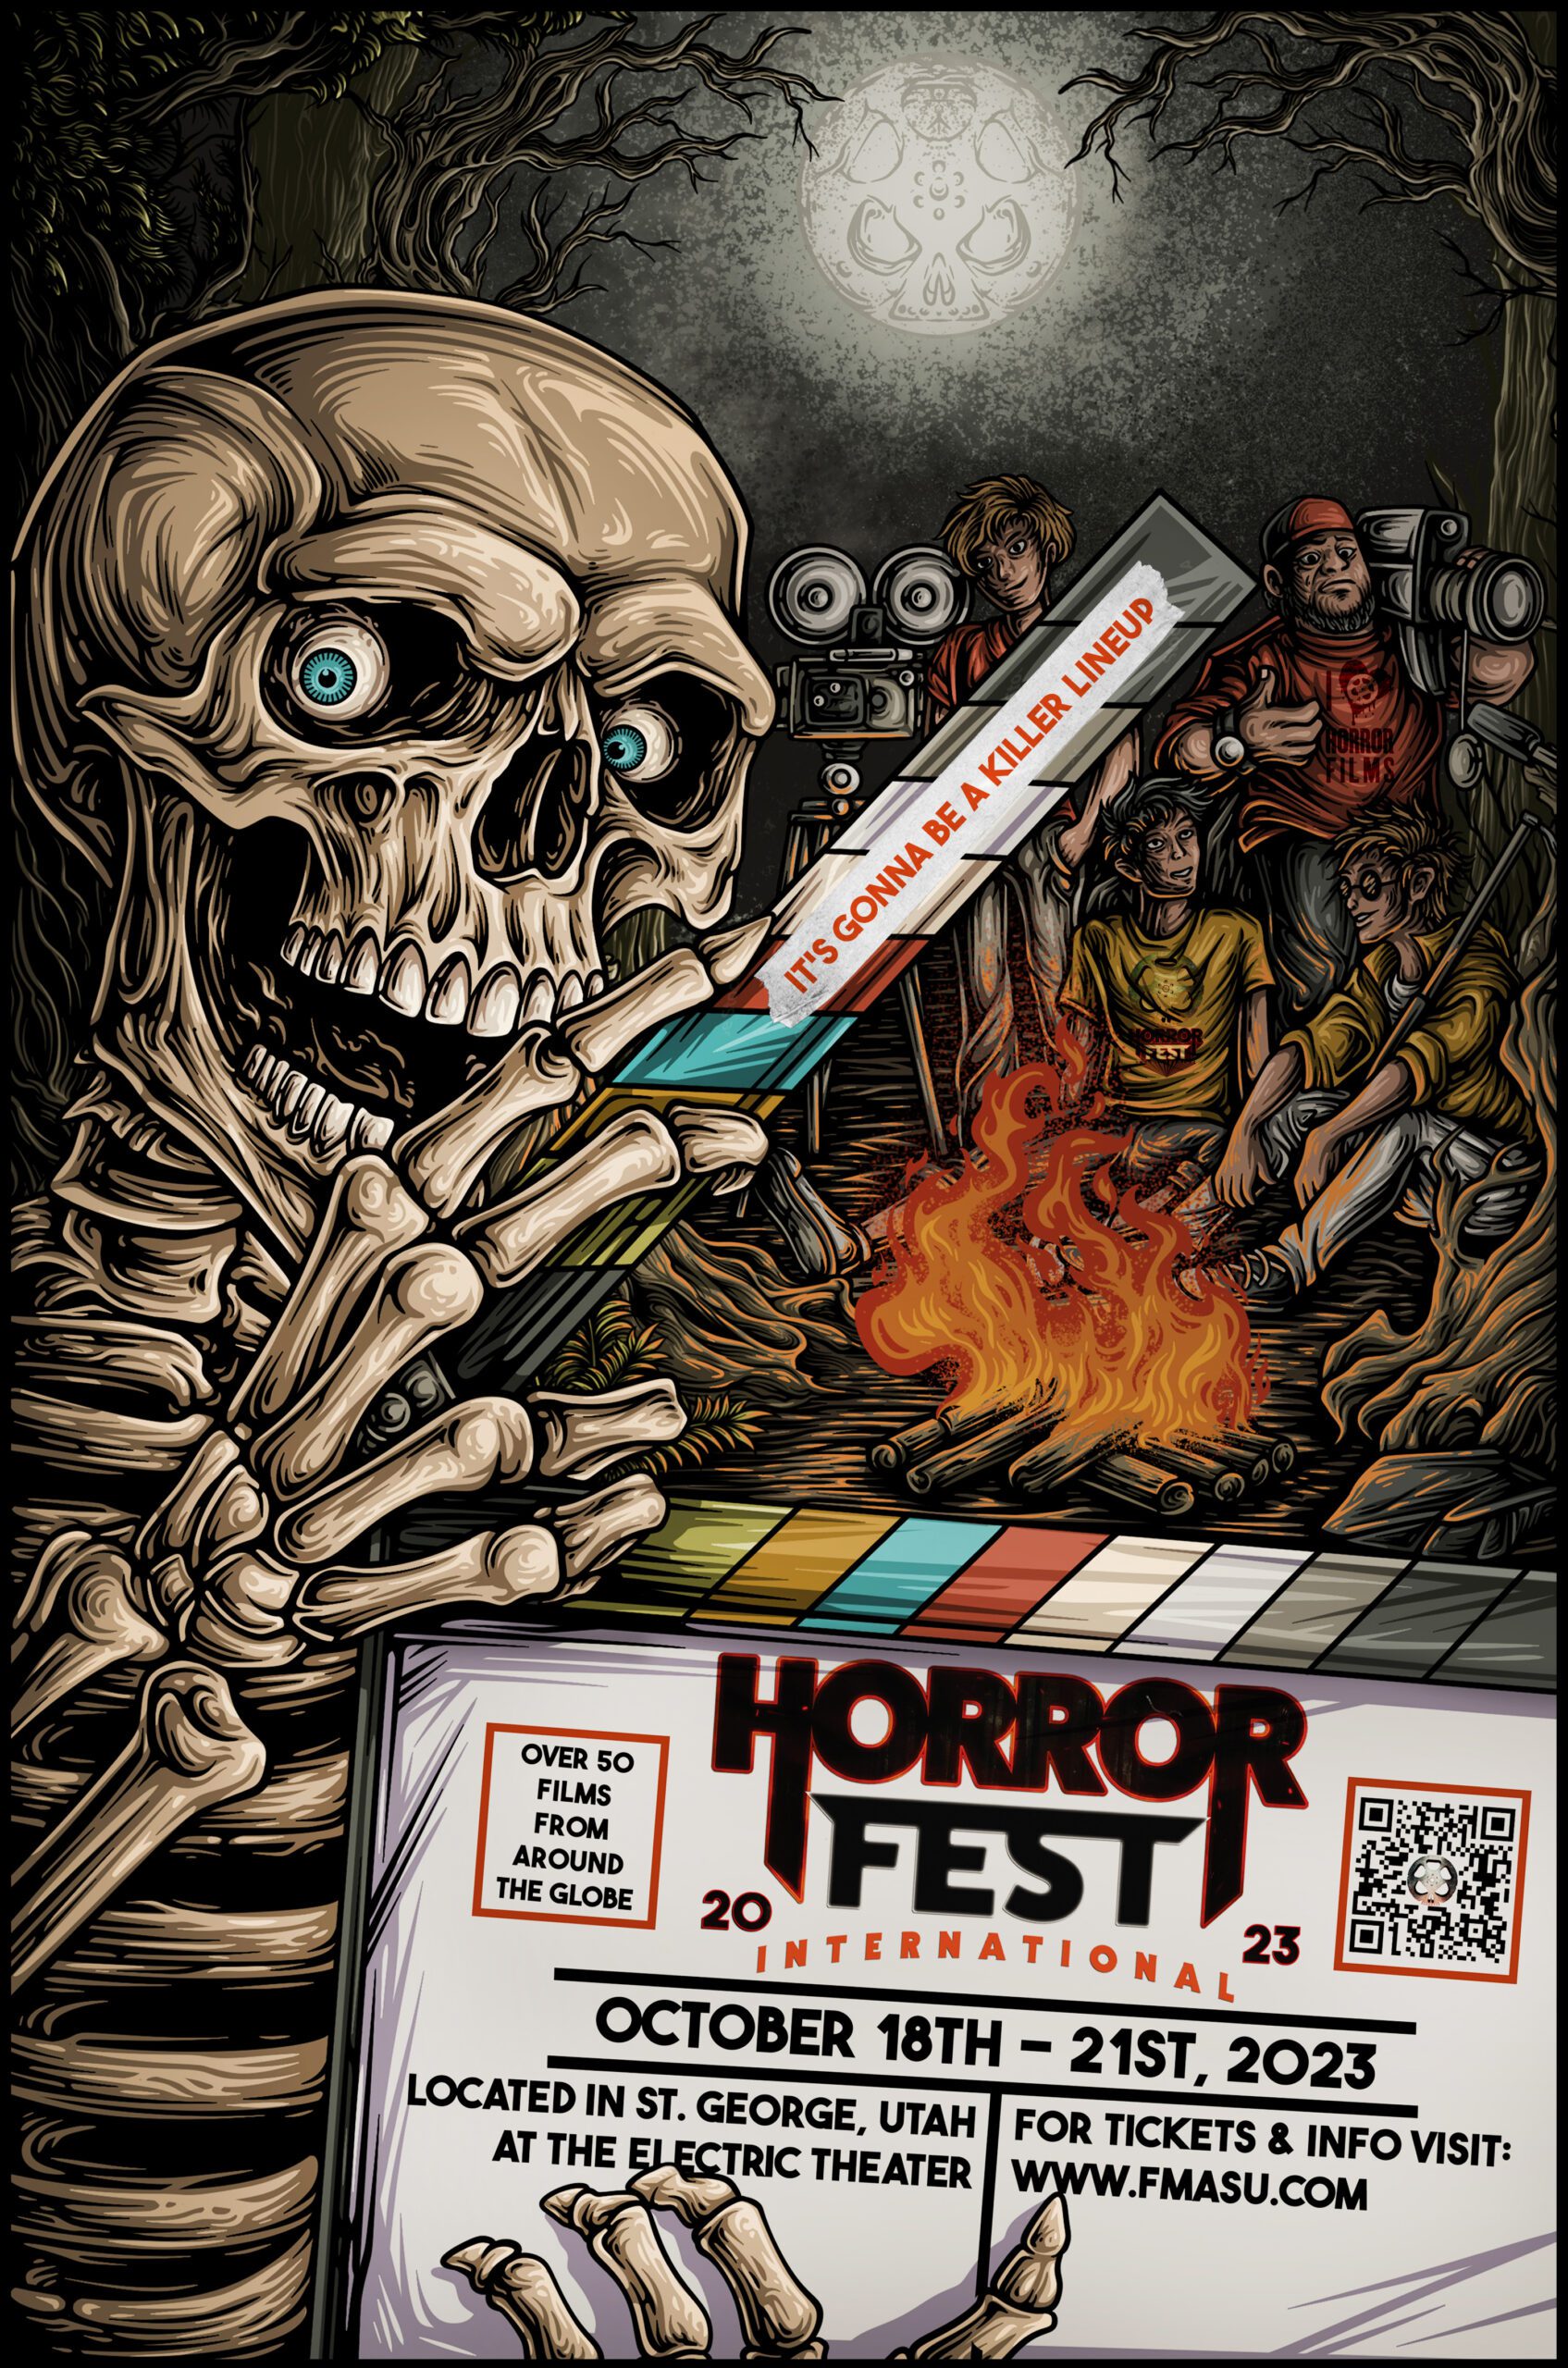 HorrorFest International Film Festival